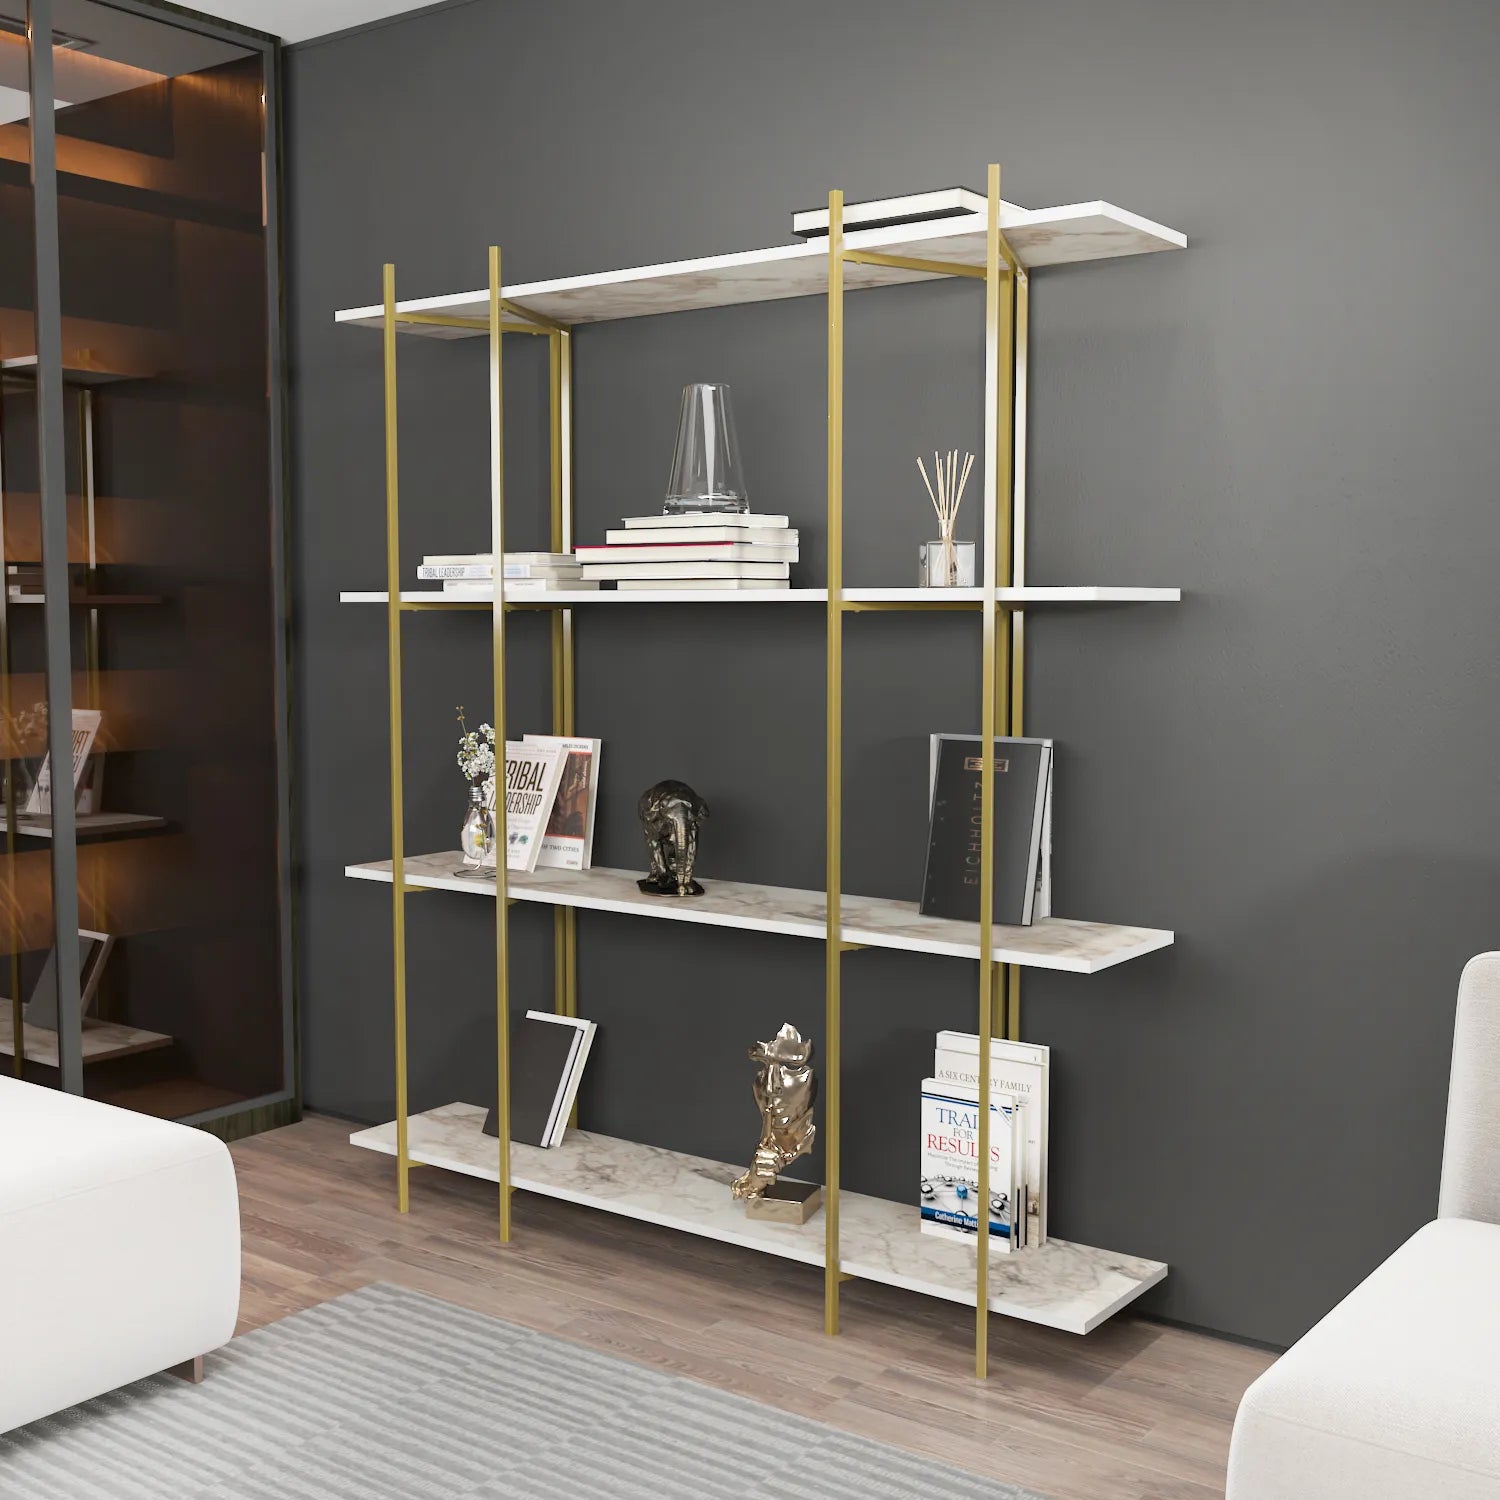 Moss 71" Tall Metal Wood Bookcase | Bookshelf | Display Unit